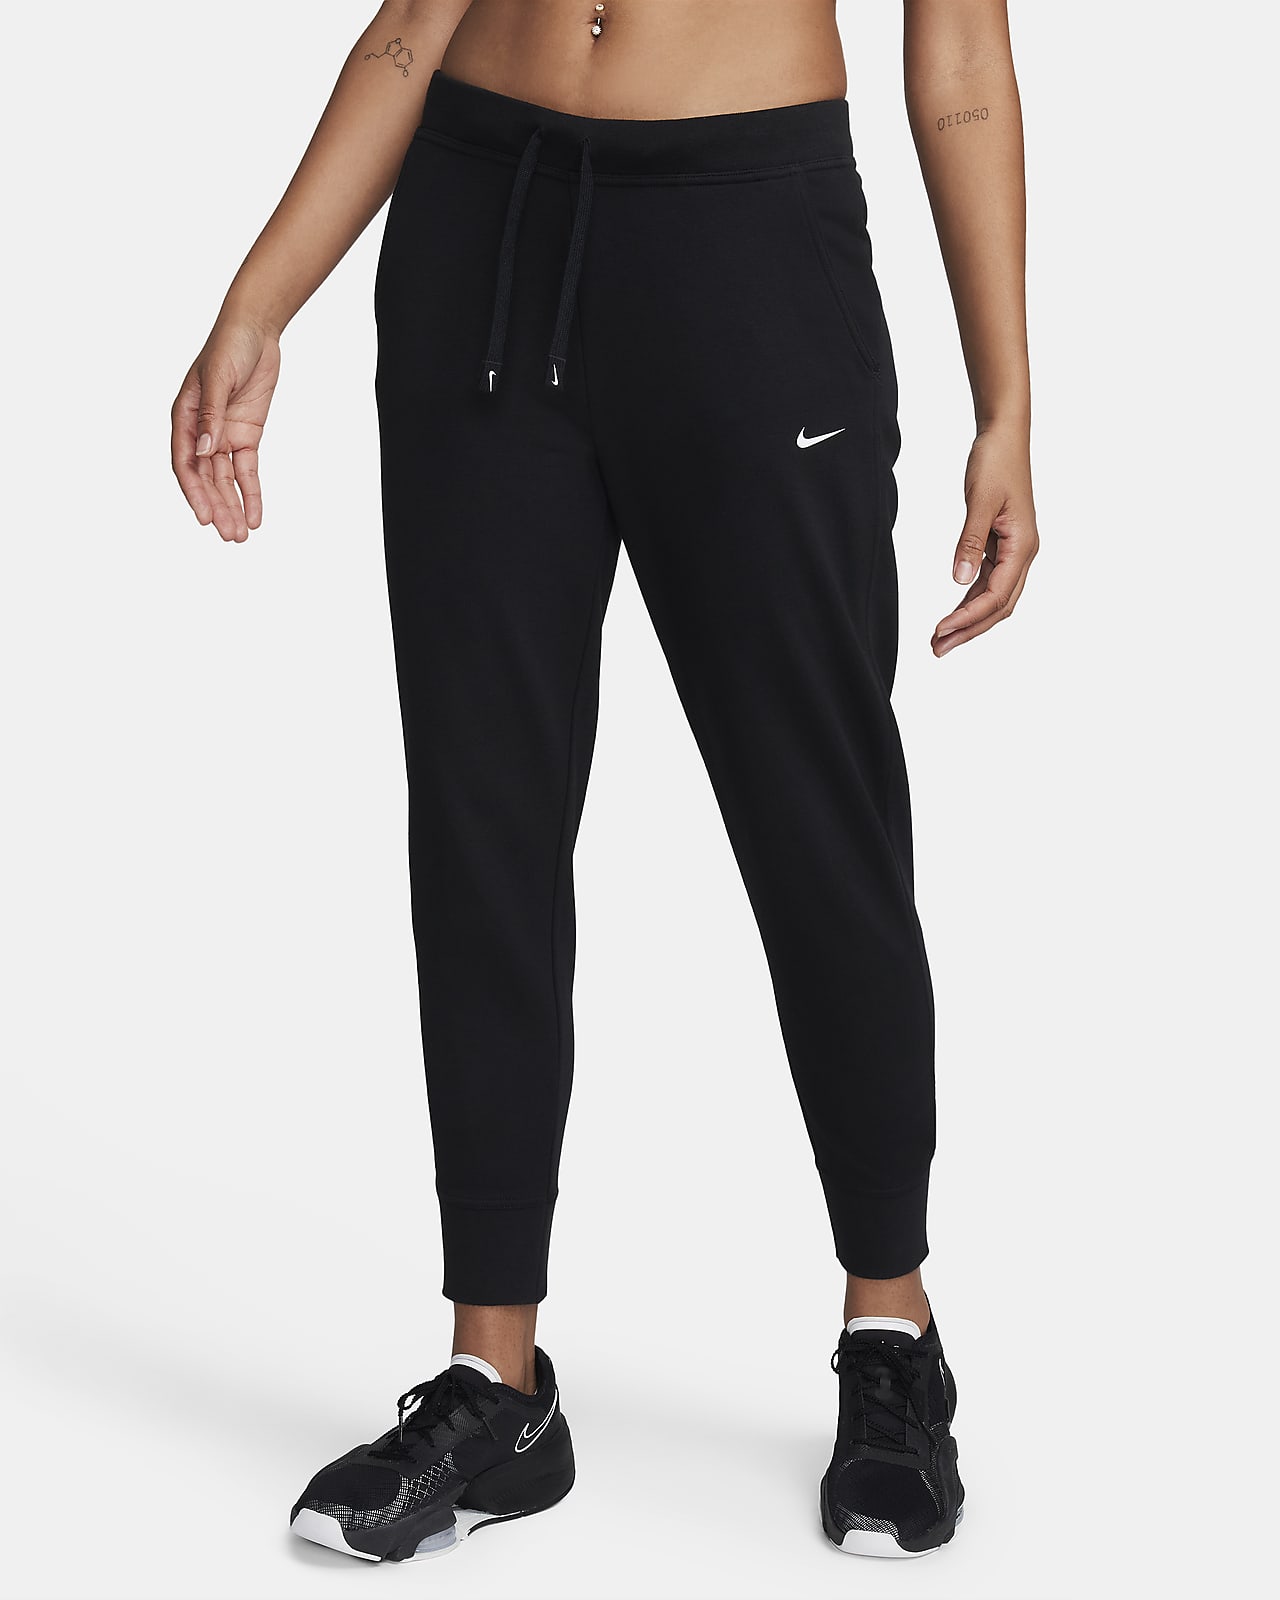 Nike Dri-FIT Get Fit Pantalón de entrenamiento - Mujer